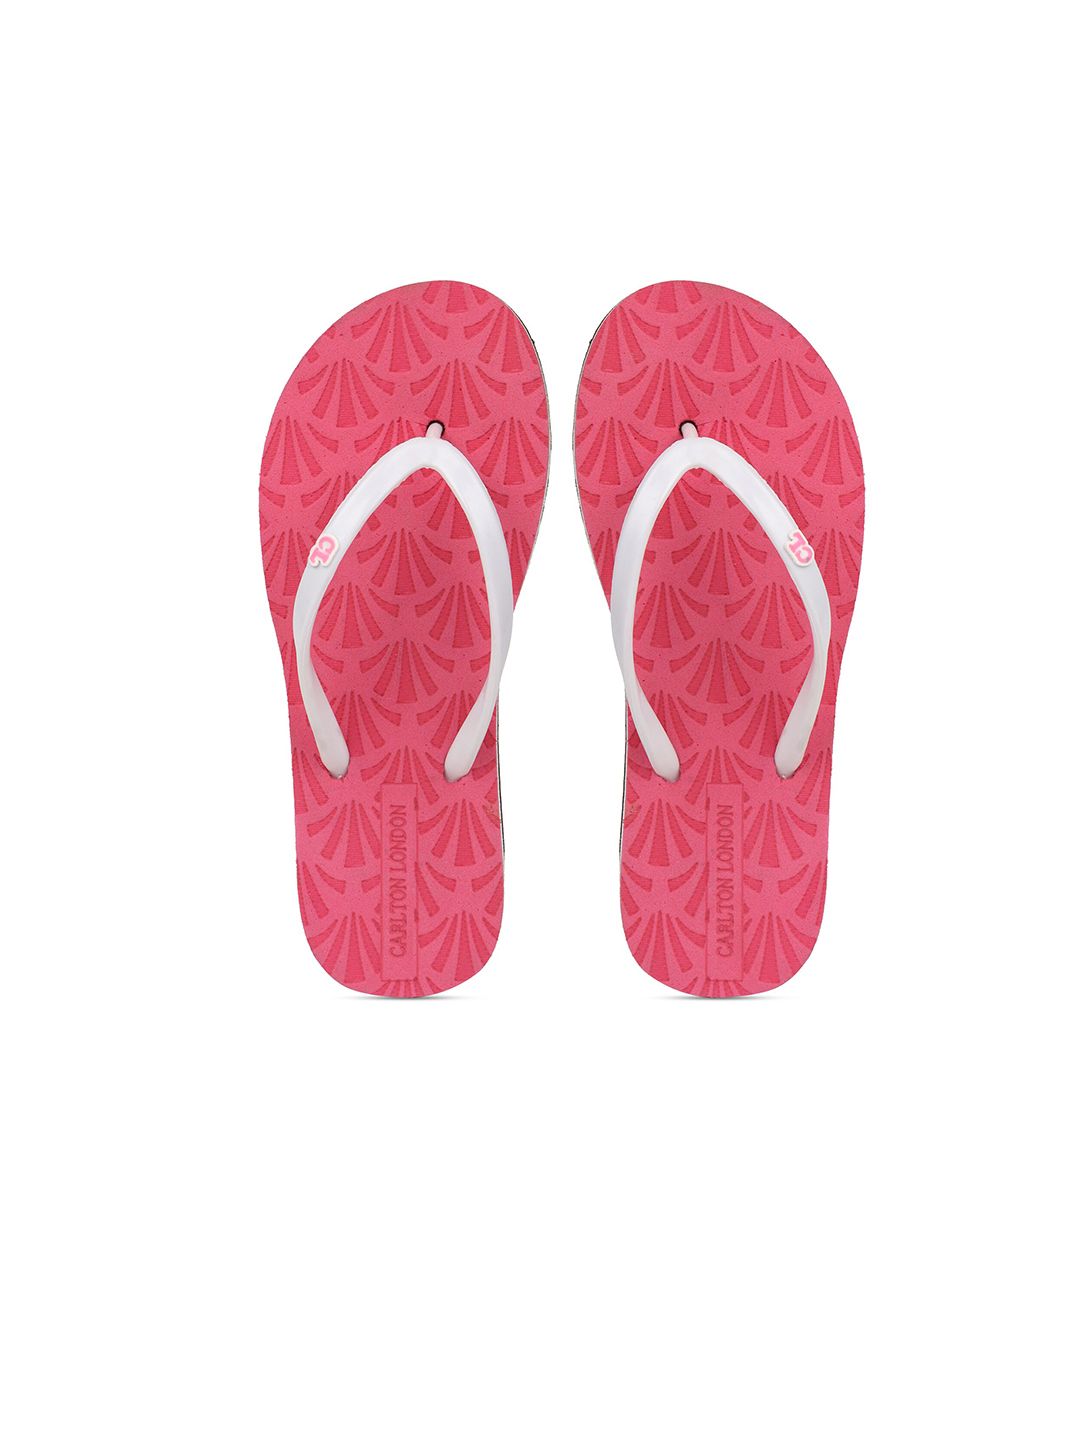 Carlton London Women Pink & White Thong Flip-Flops Price in India